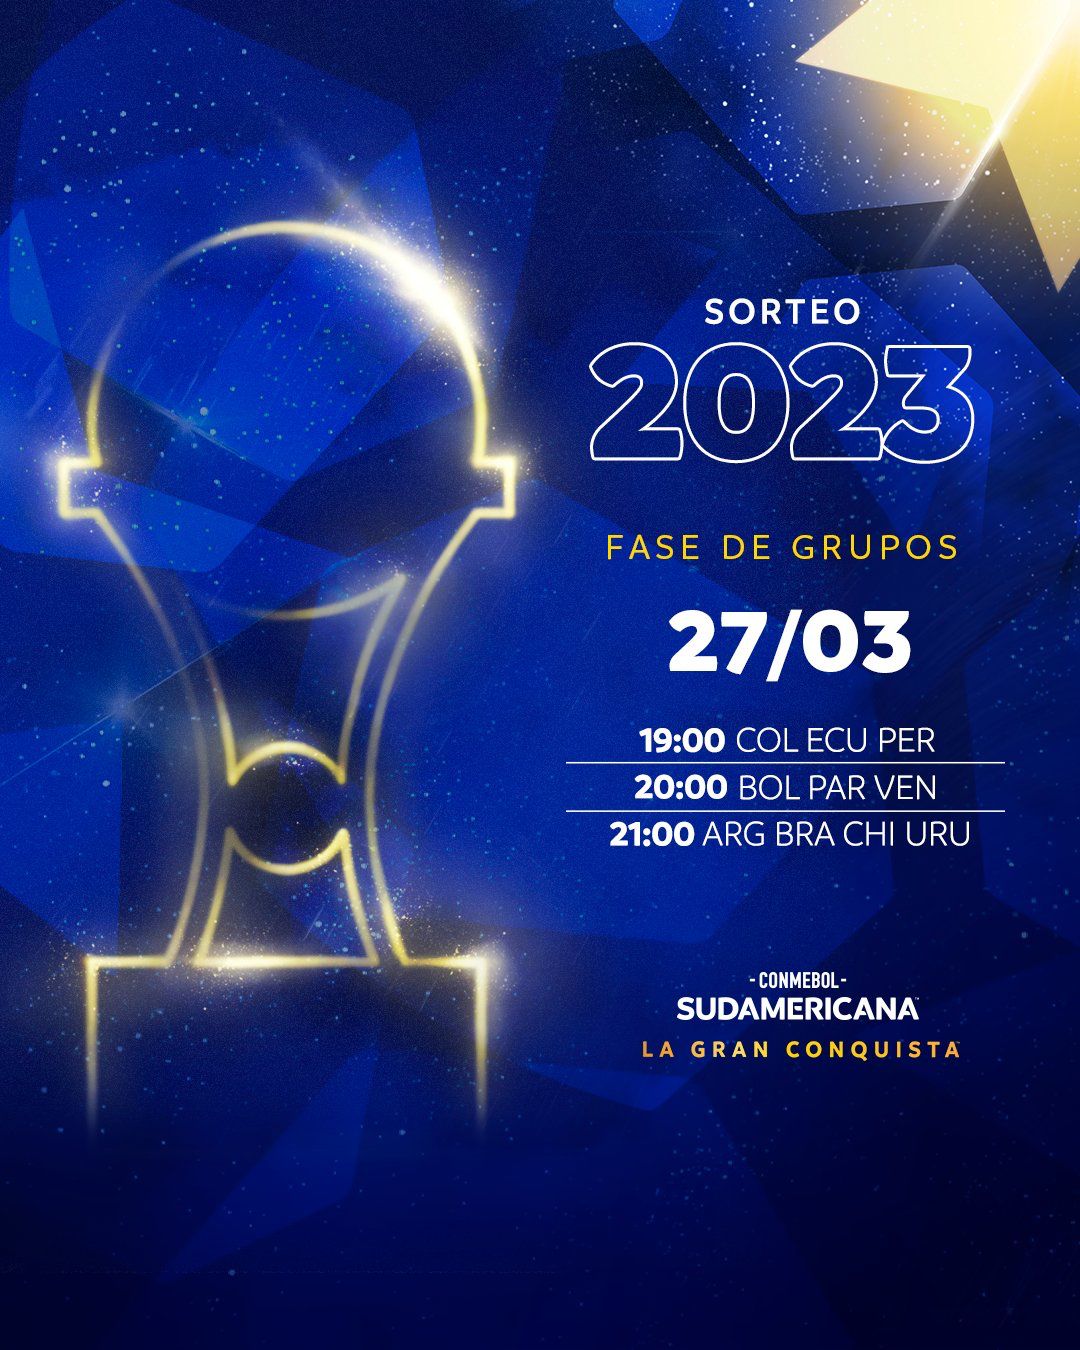 Horarios del sorteo de la fase de grupos de la Copa Sudamericana.